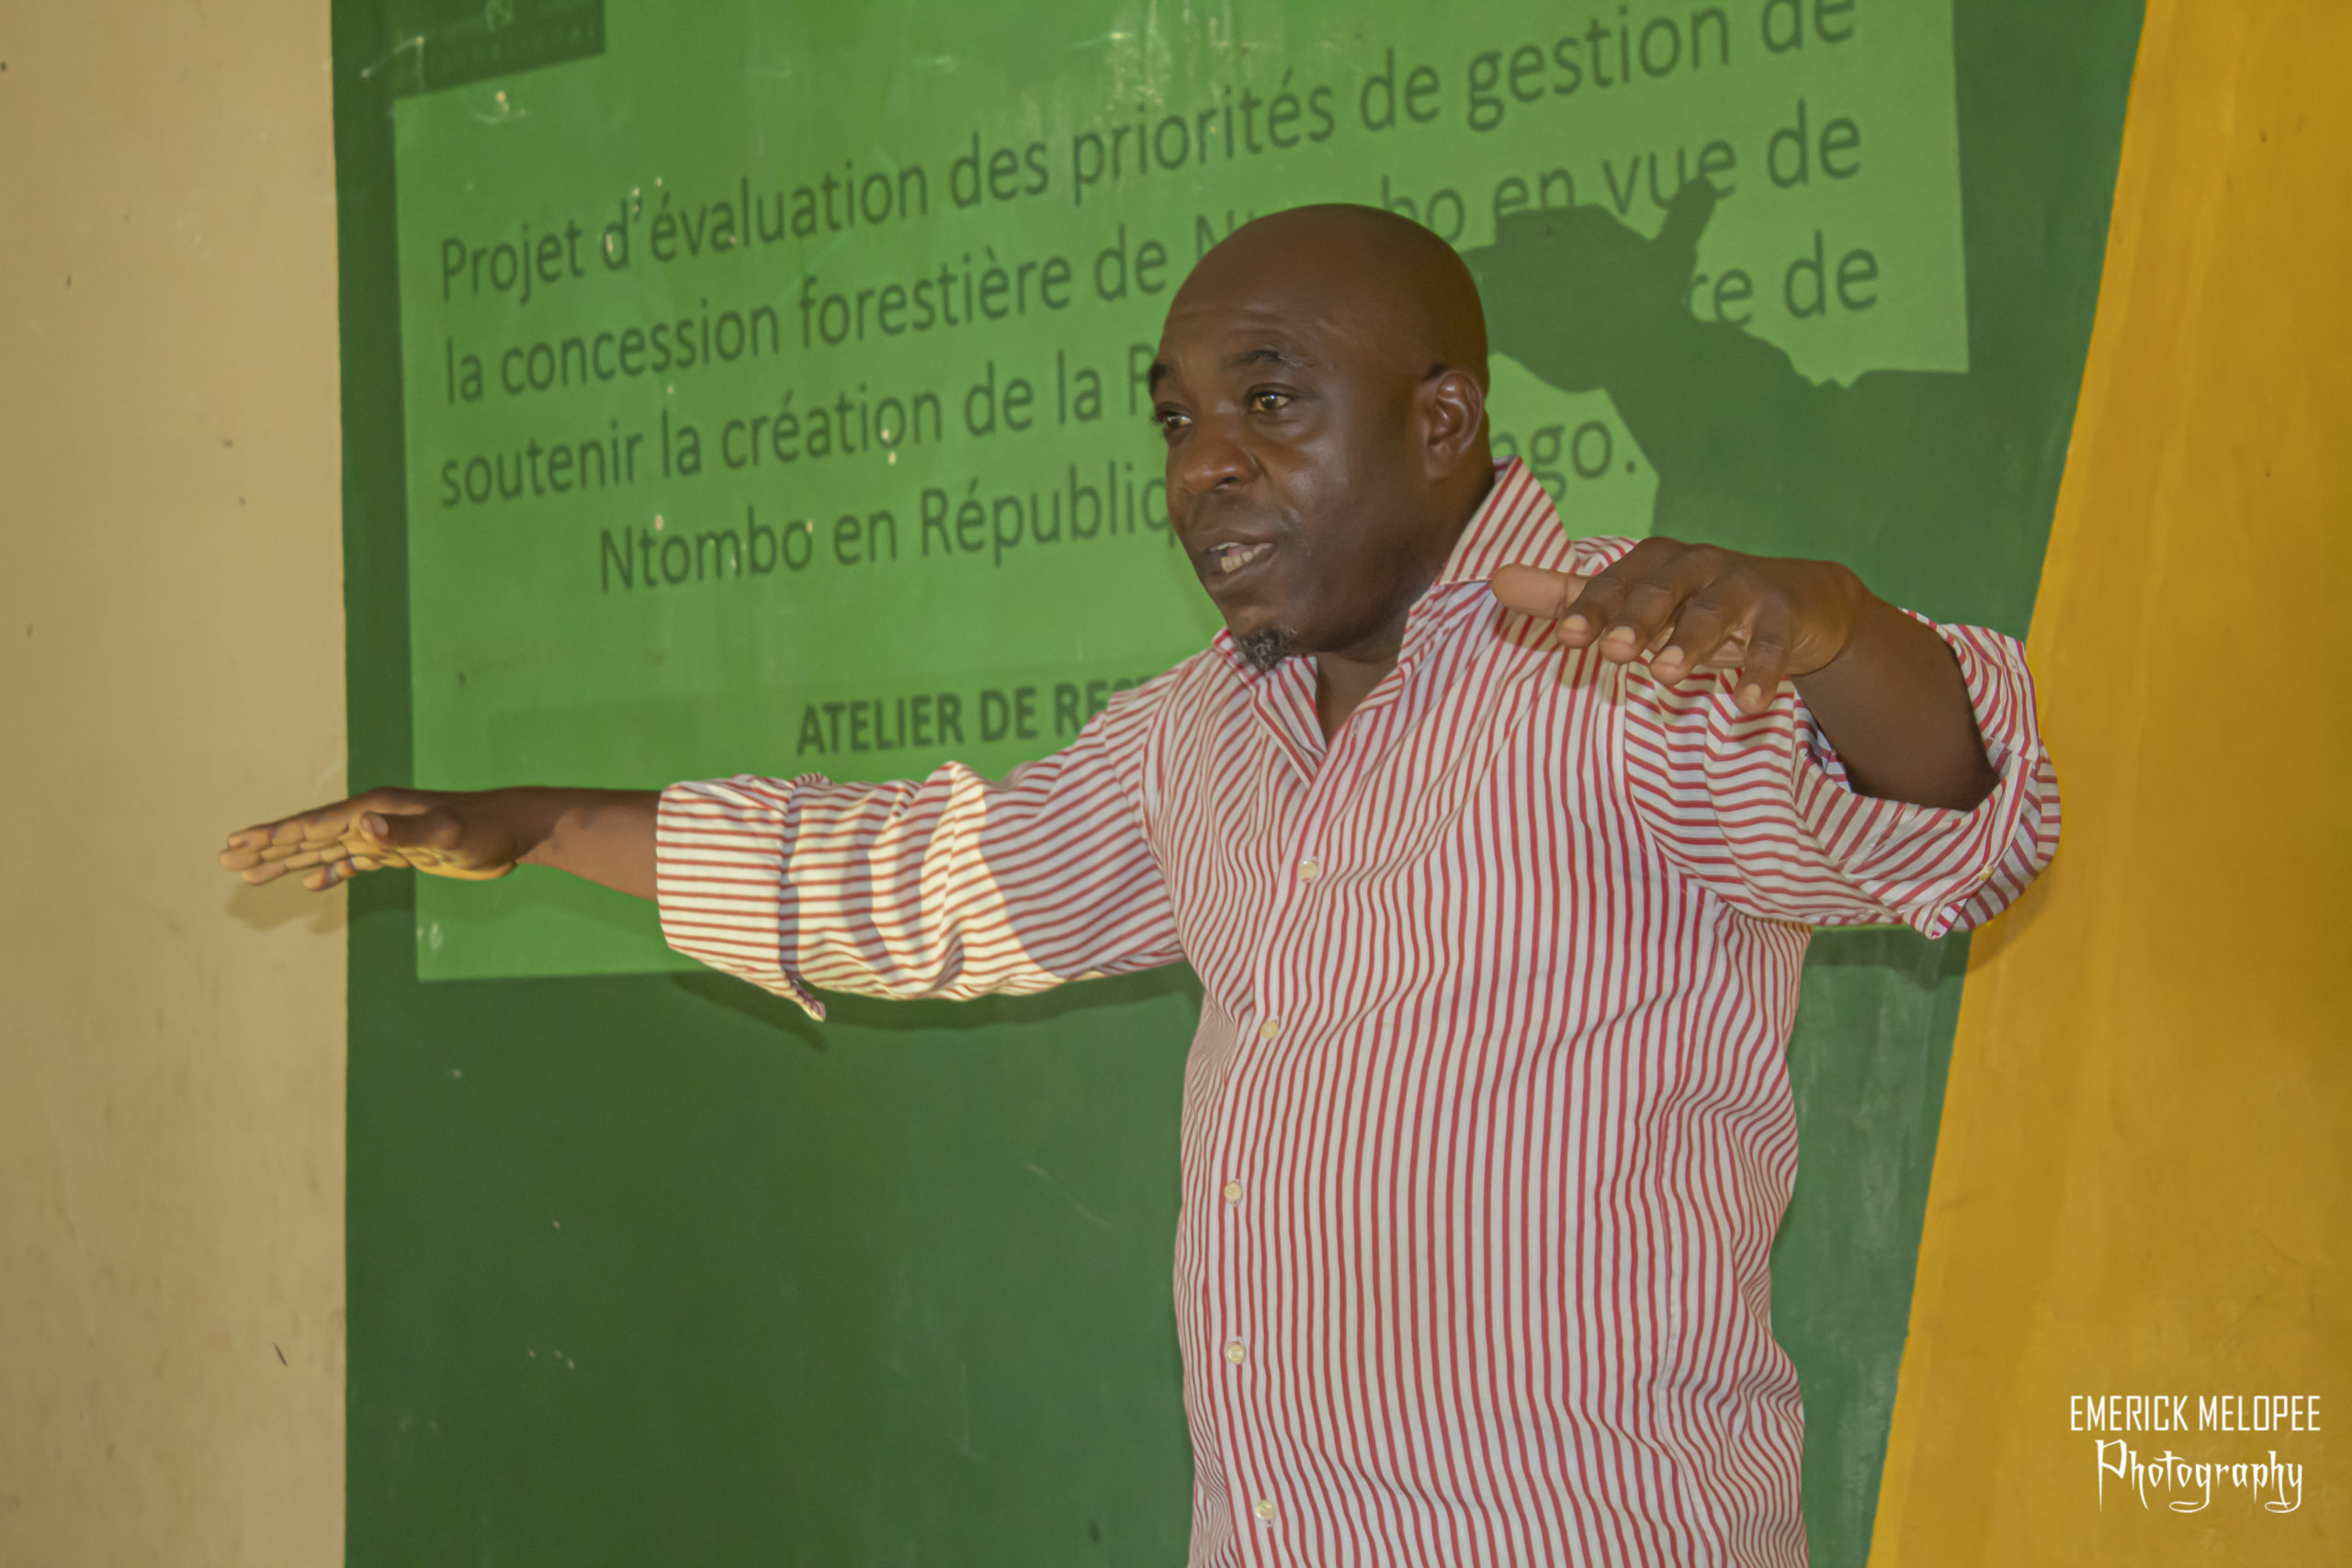 ESI Congo mène un projet d’évaluation des priorités de gestion de la concession forestière de Ntombo en vue de soutenir la création de la Réserve forestière de Ntombo, en République du Congo